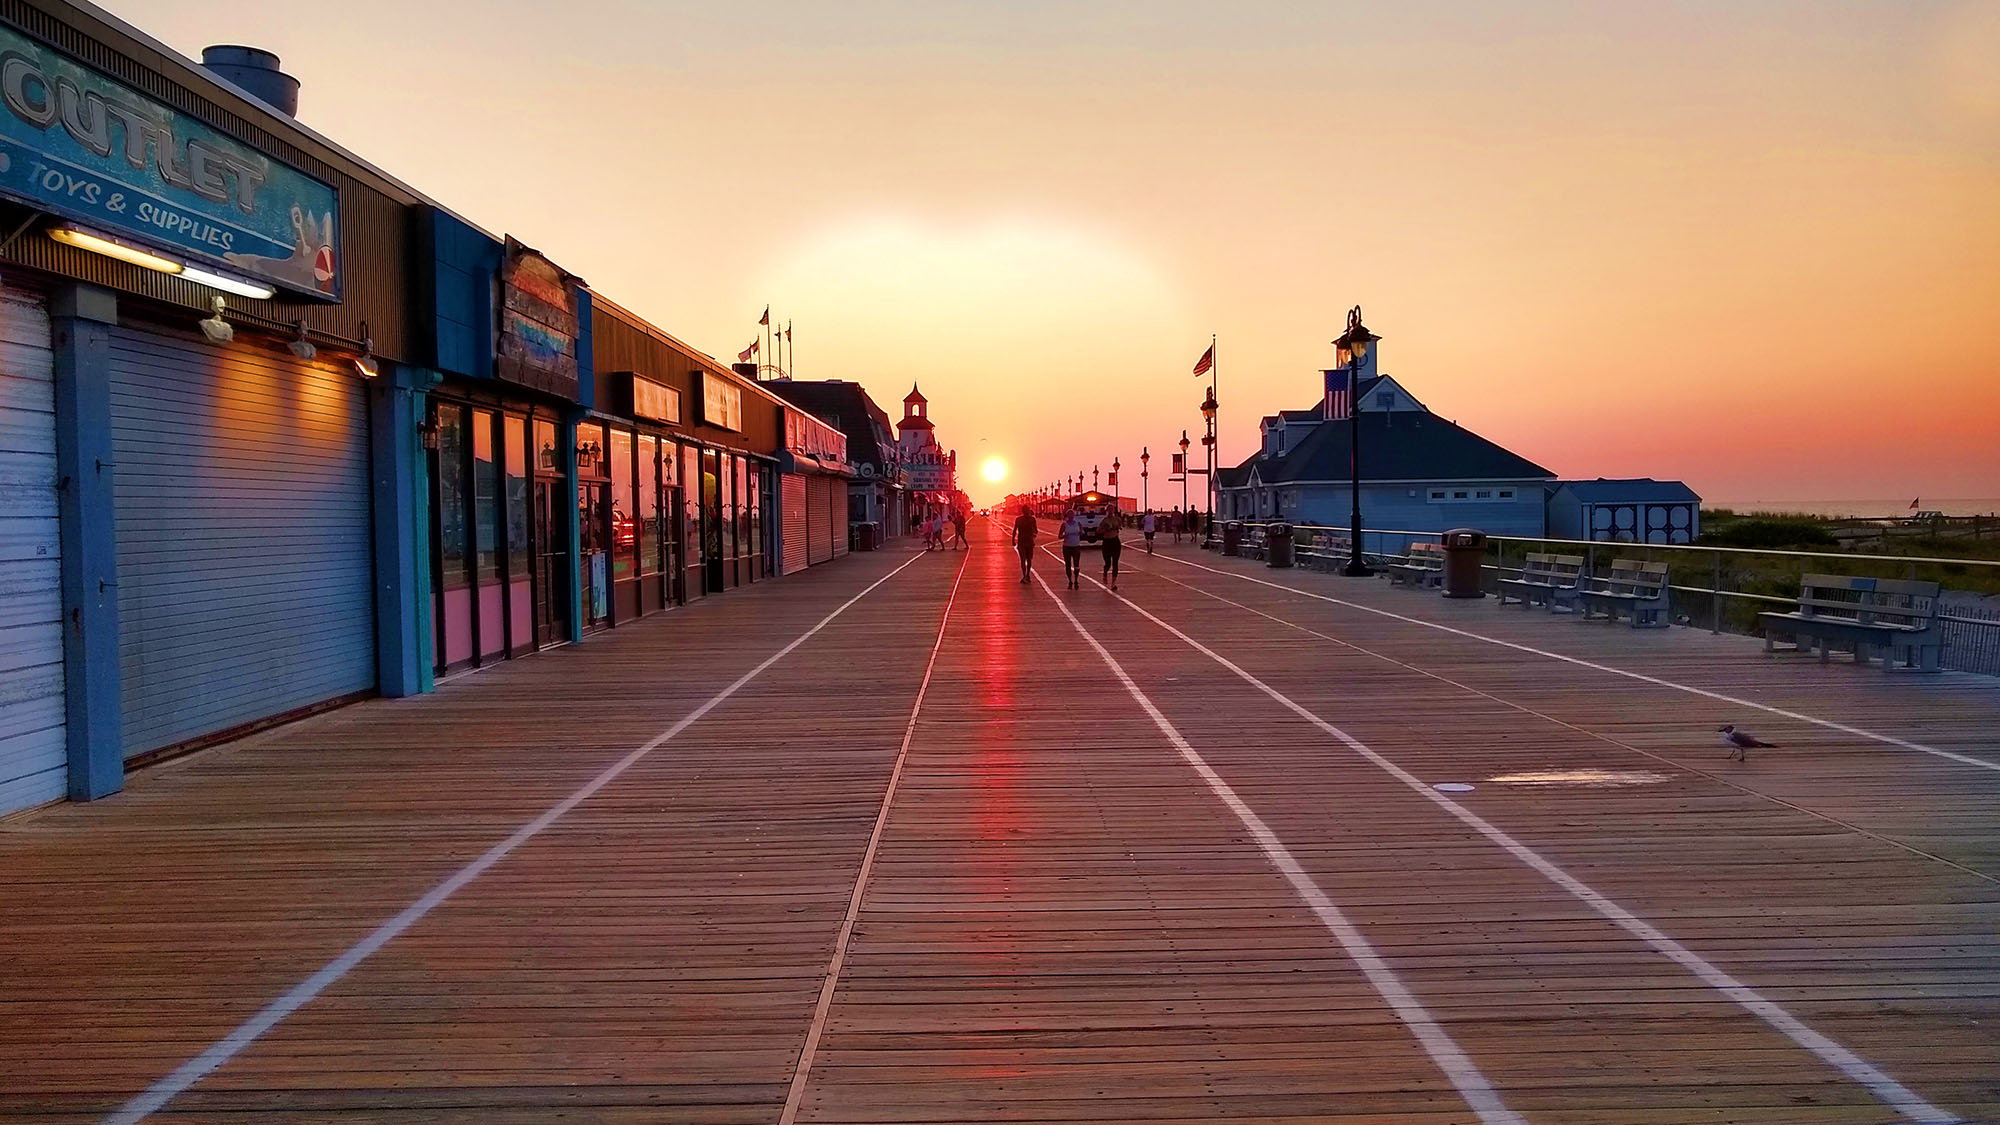 Ocean City Boardwalk – early morning